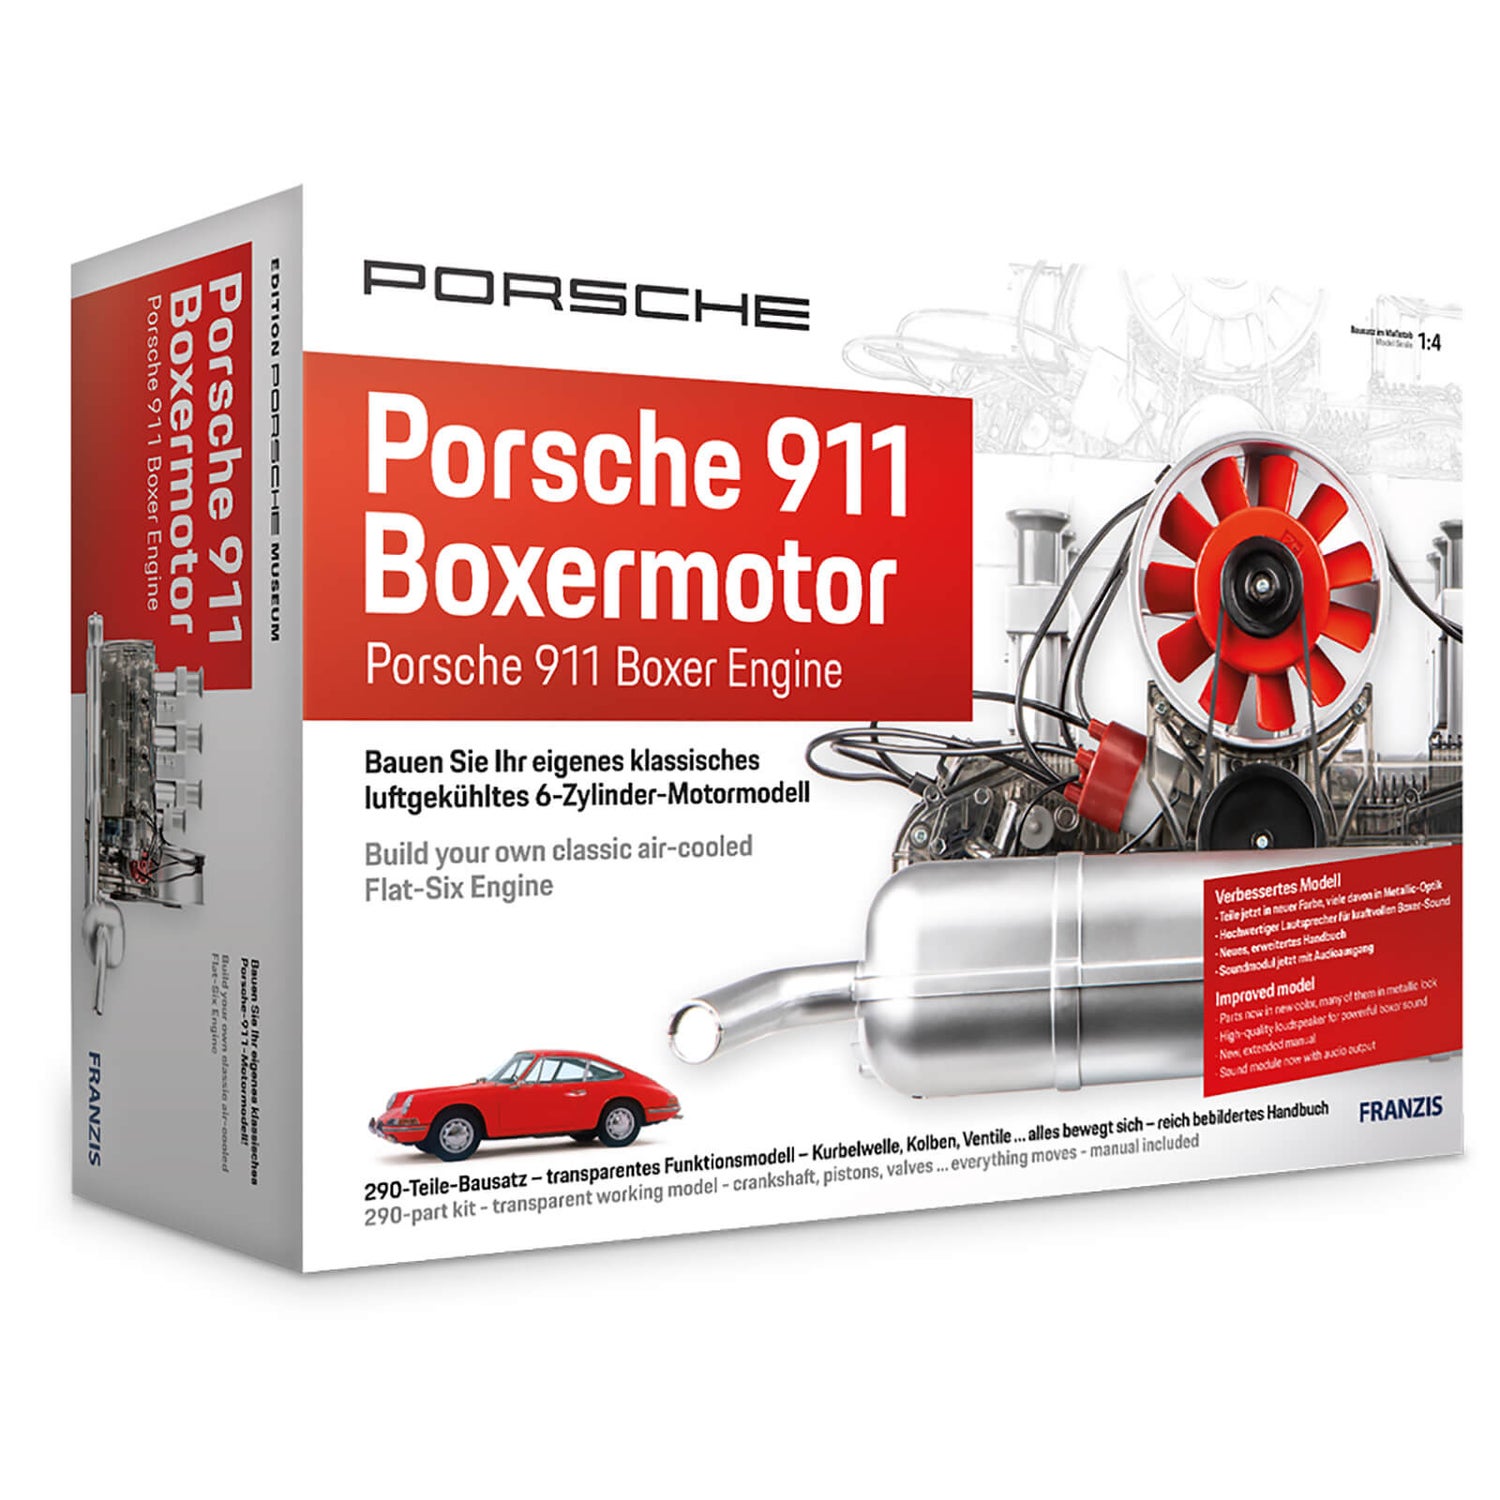 Franzis Official Porsche 911 Boxer Engine